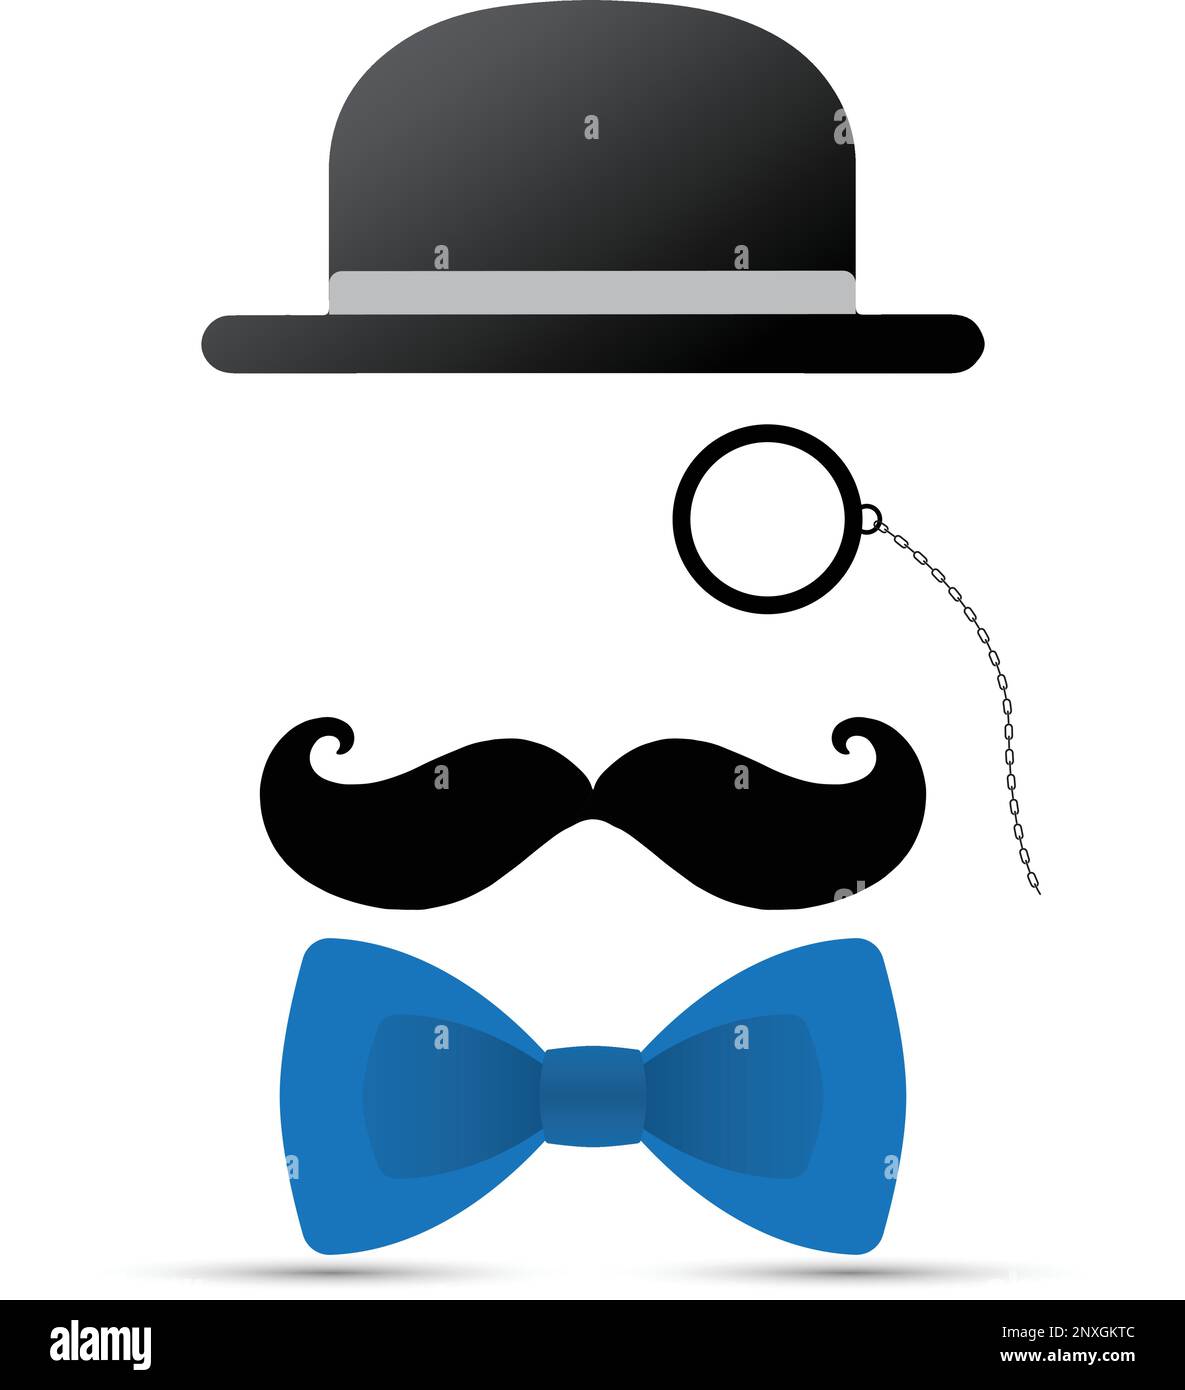 Schwarzer Schnurrbart, Monokel, Hut und blaue Fliege auf weißem Hintergrund Stock Vektor